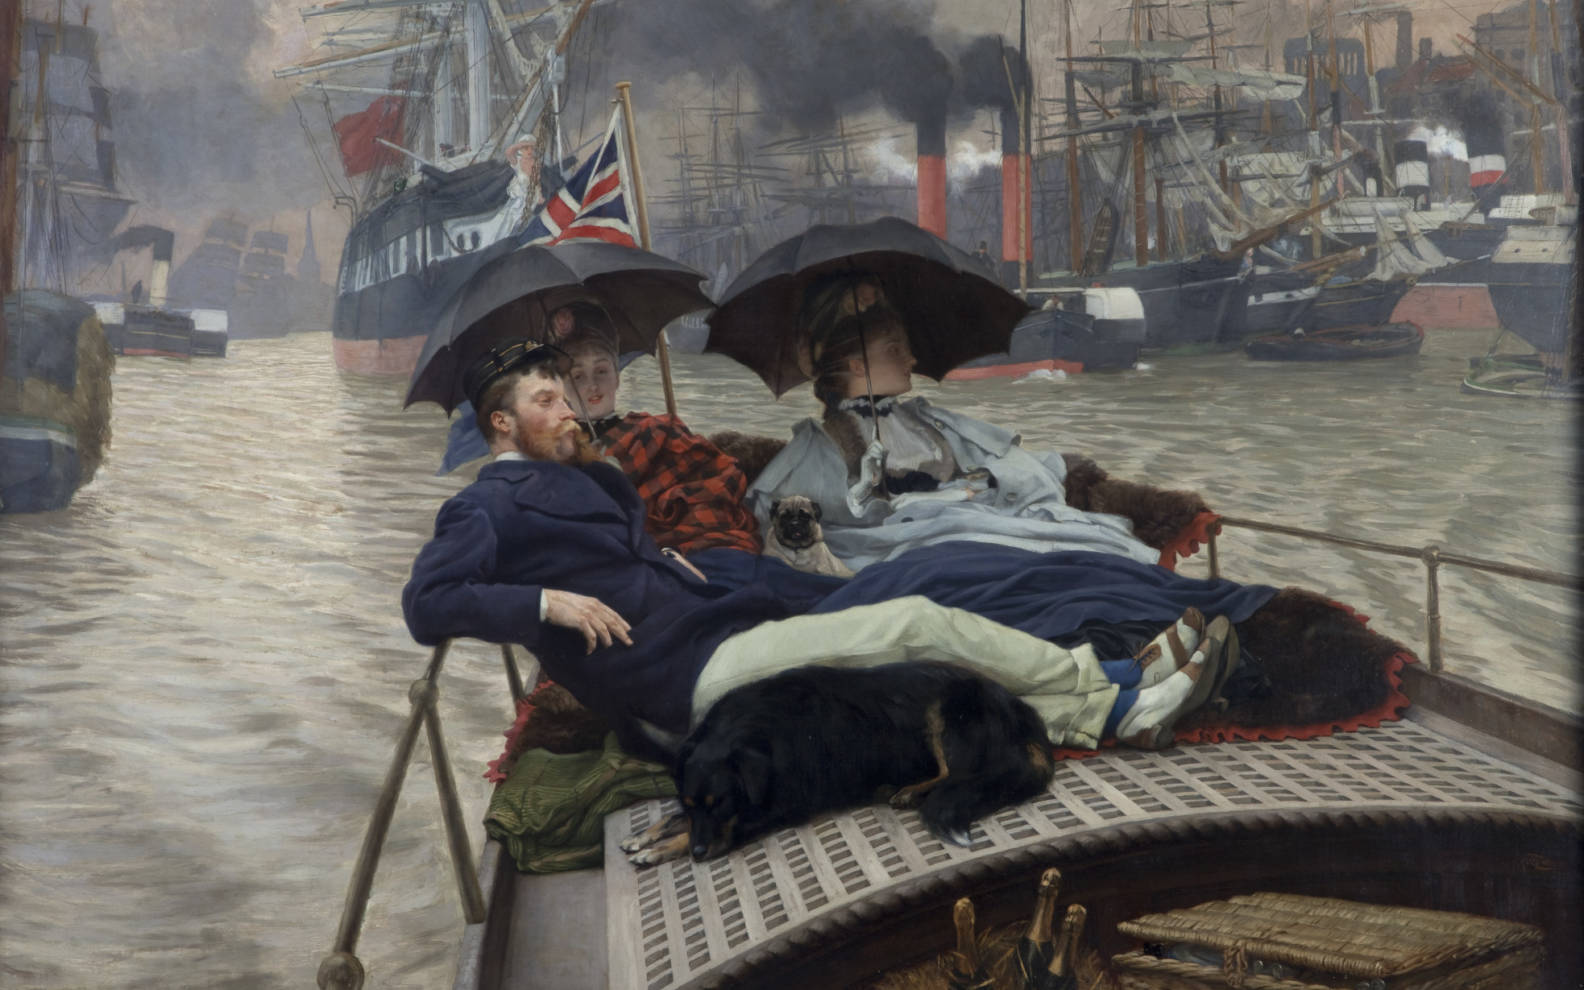 Sur la Tamise (Comment heureux je pourrais être avec soit l’une ou l’autre?) by James Tissot - 1876 - 74.8 x 118 cm 